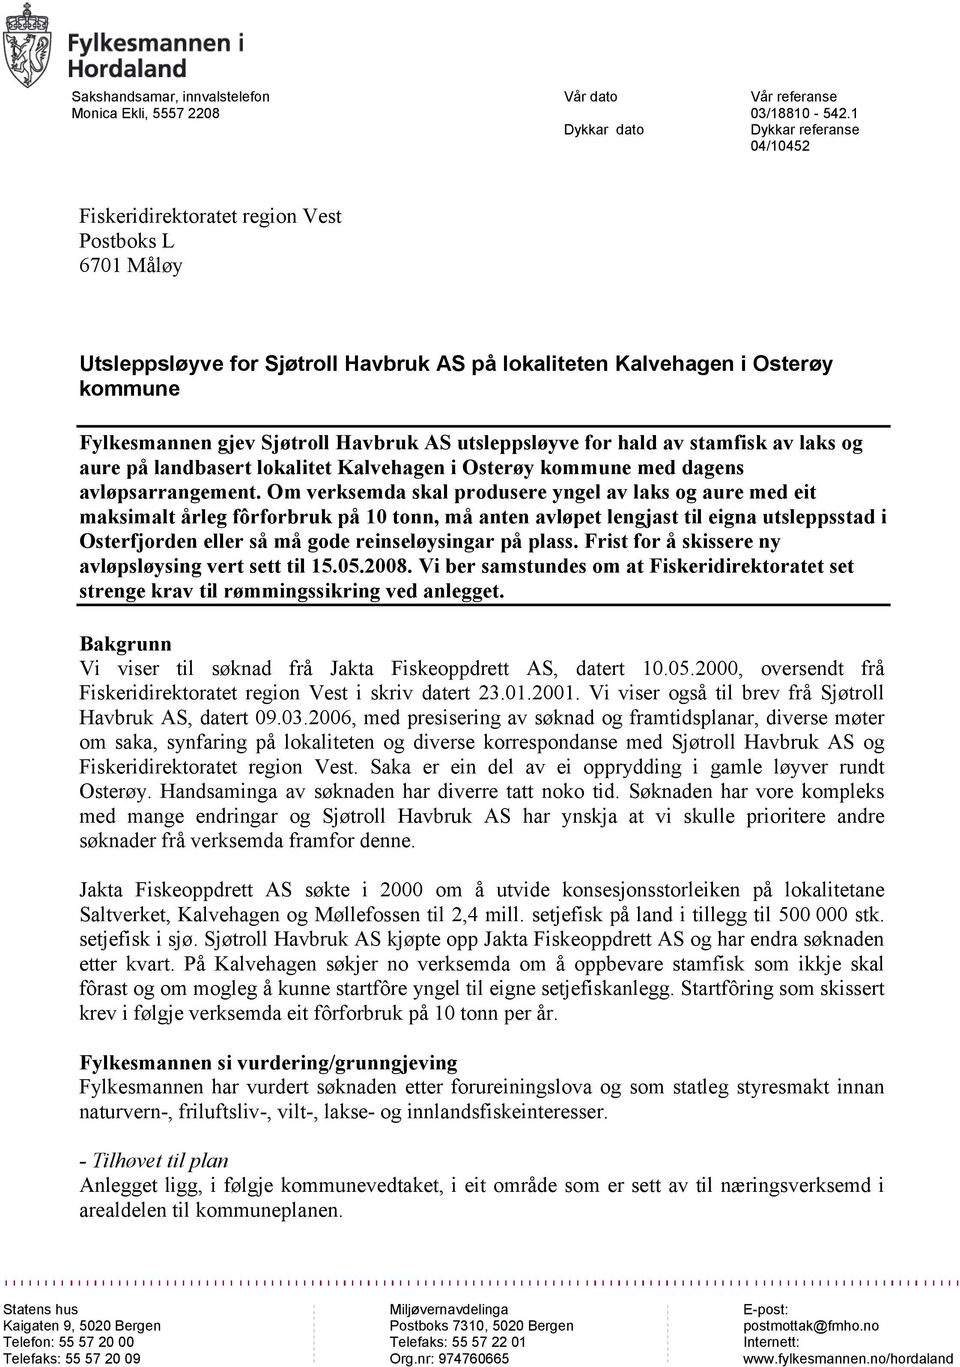 AS utsleppsløyve for hald av stamfisk av laks og aure på landbasert lokalitet Kalvehagen i Osterøy kommune med dagens avløpsarrangement.